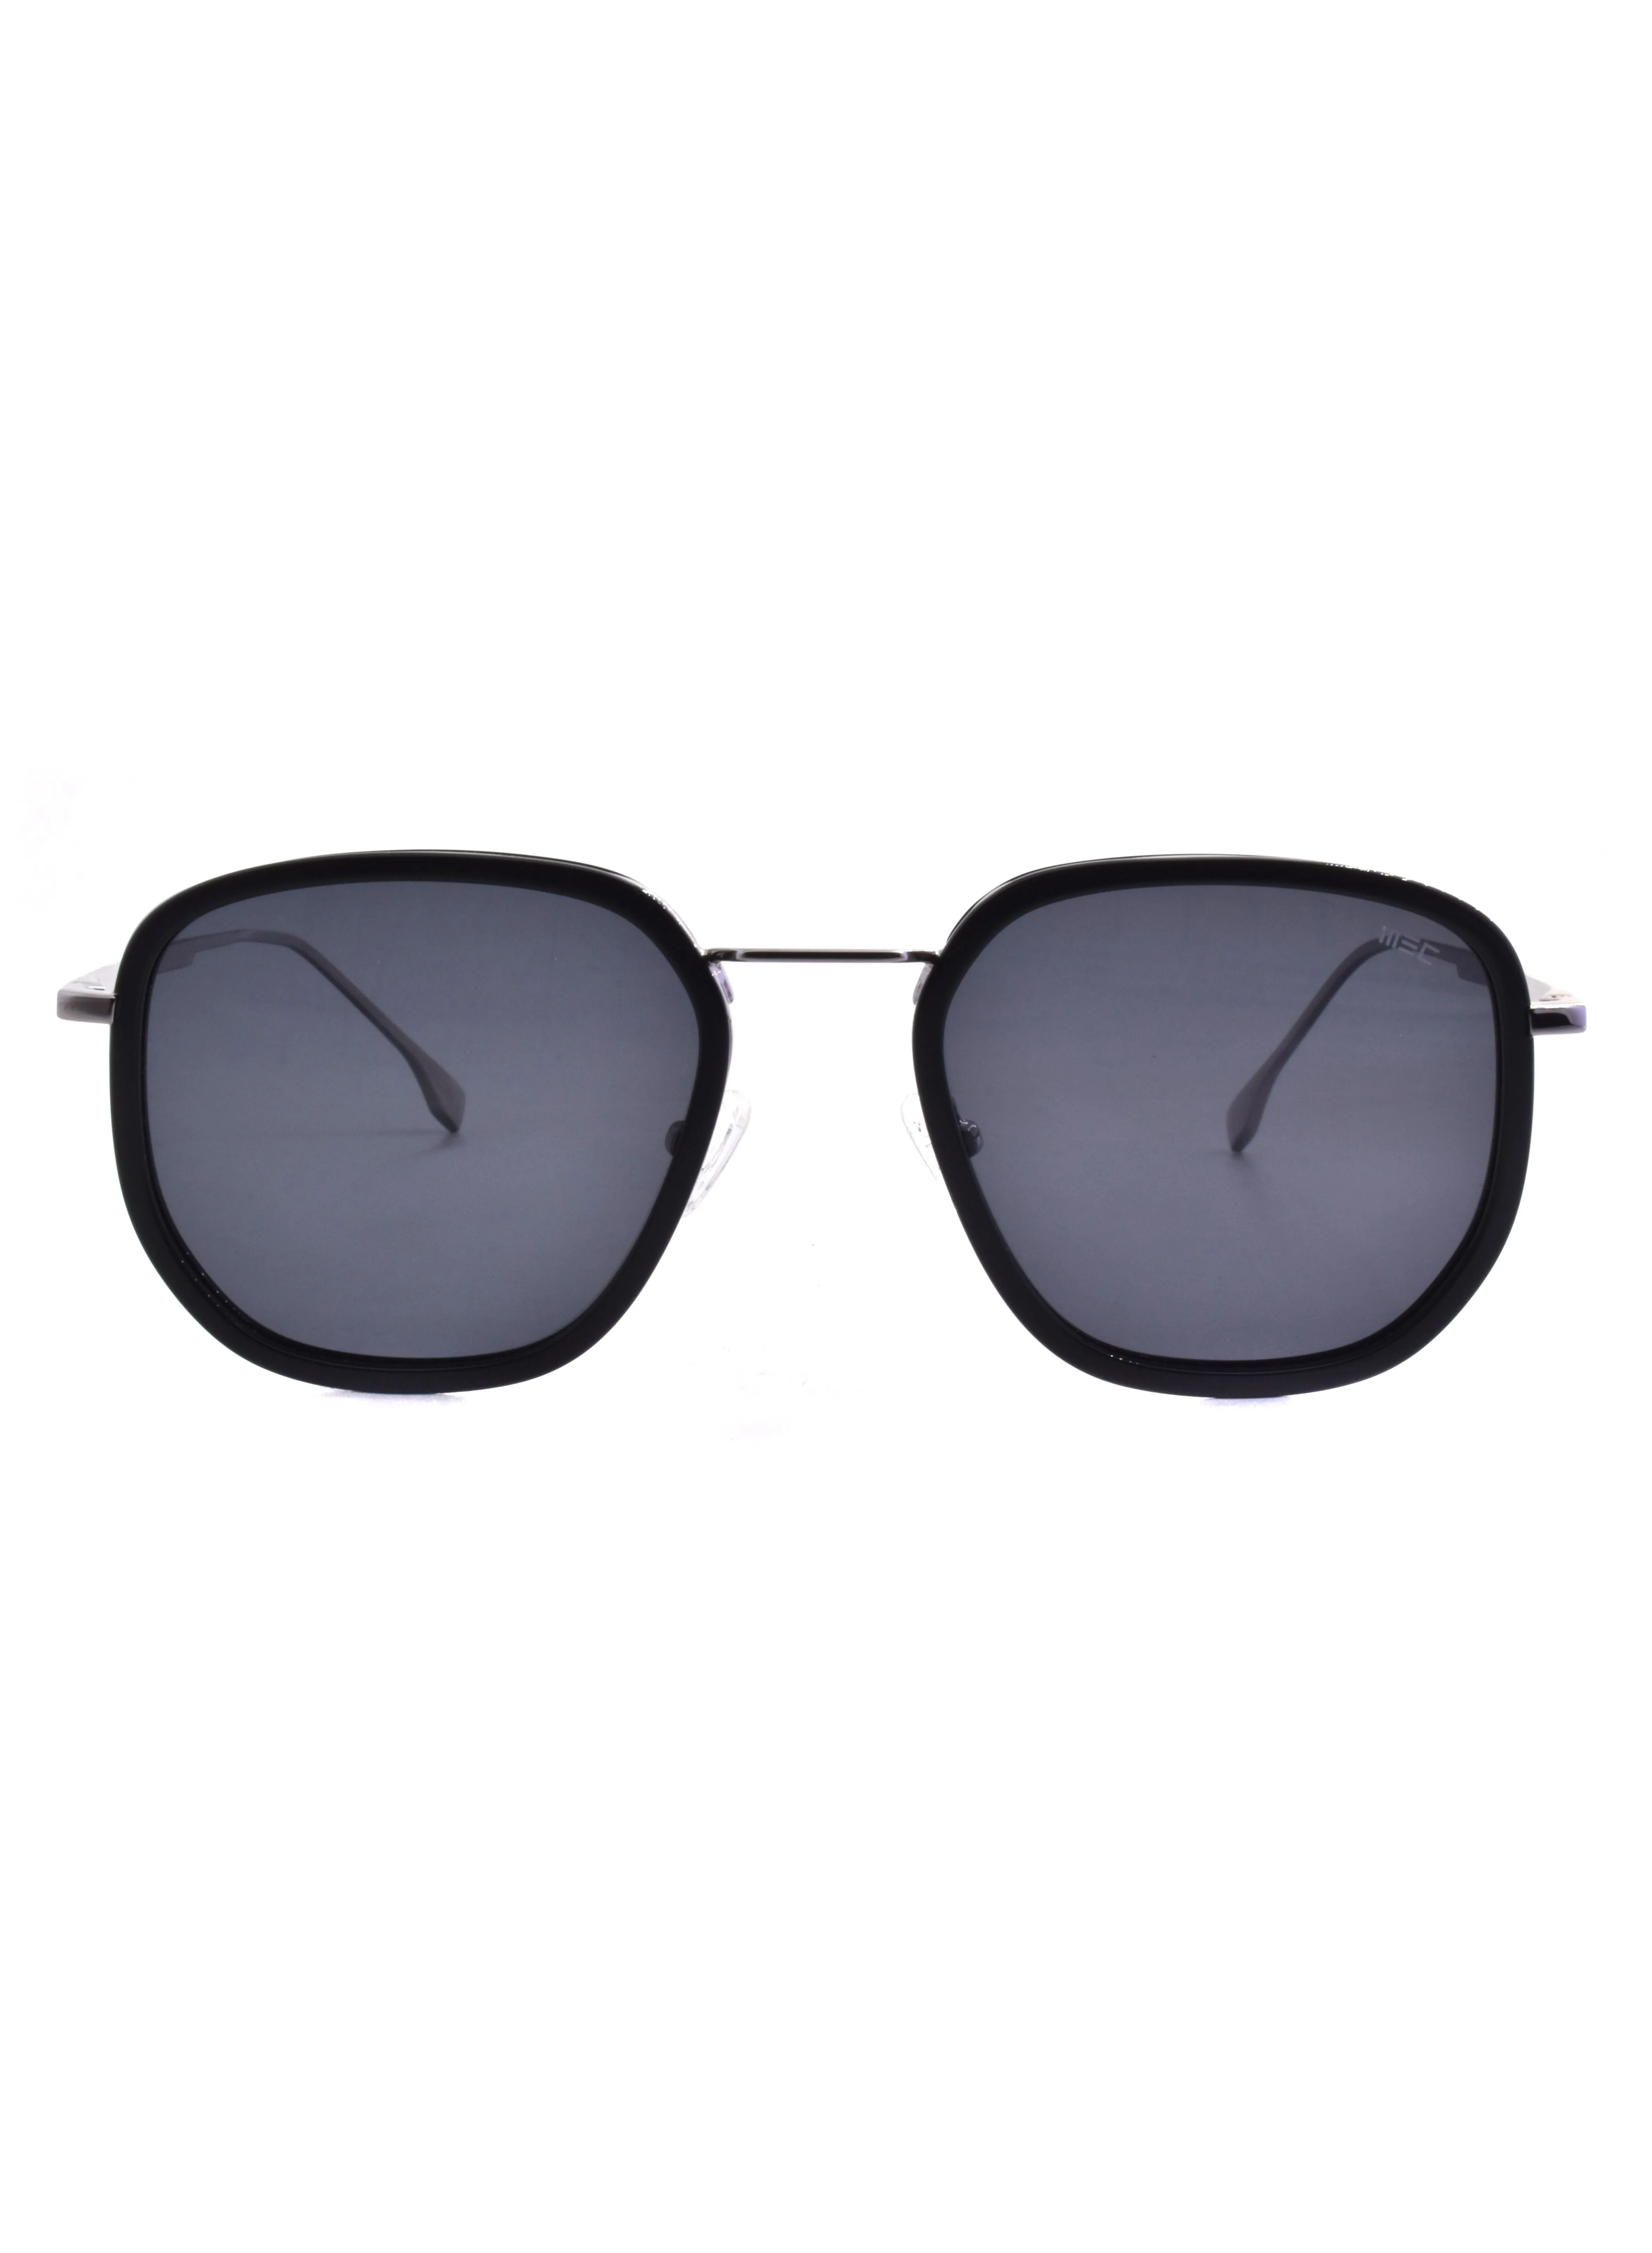 نظارة شمسية إم إي سي مربعة الشكل طراز GLT9031-C3